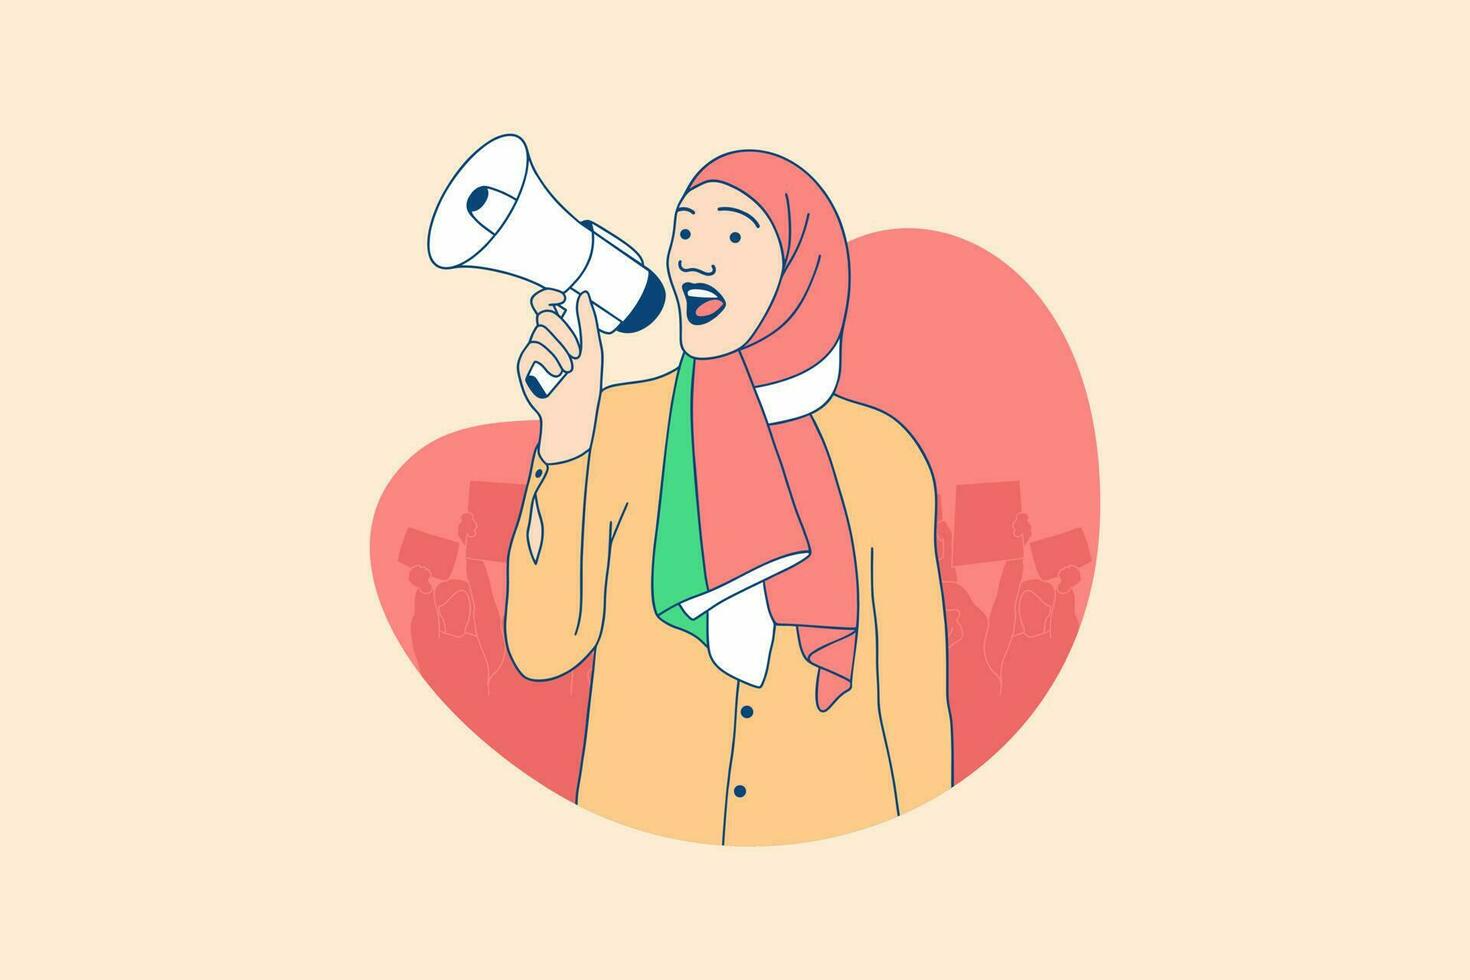 Illustrationen schöne iranische Demonstrantinnen kostenlos Gestaltungskonzept der iranischen Frauenkampagne vektor